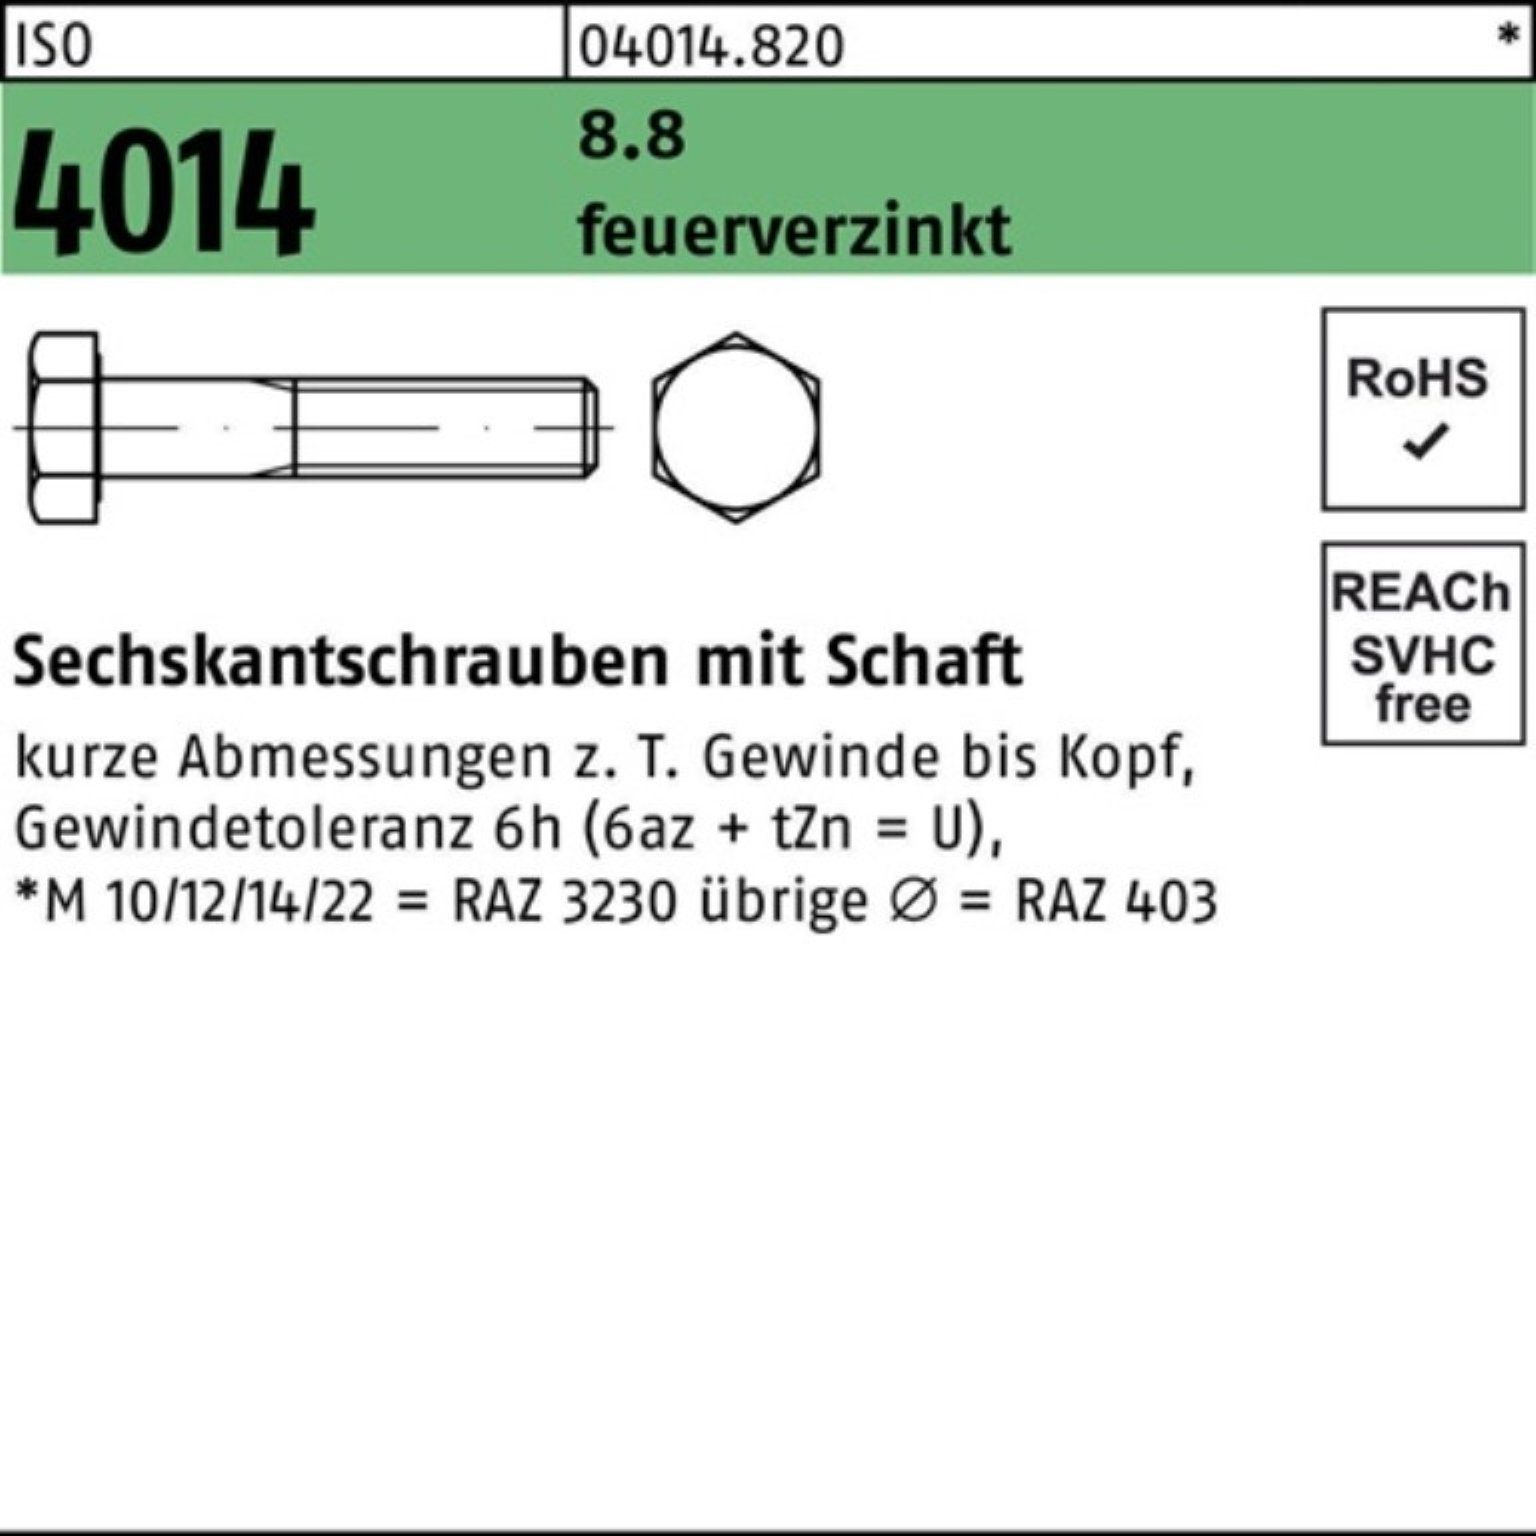 Schaft Pack 8.8 Bufab Sechskantschraube feuerverz. 4014 Sechskantschraube 200 M24x 100er 1 ISO